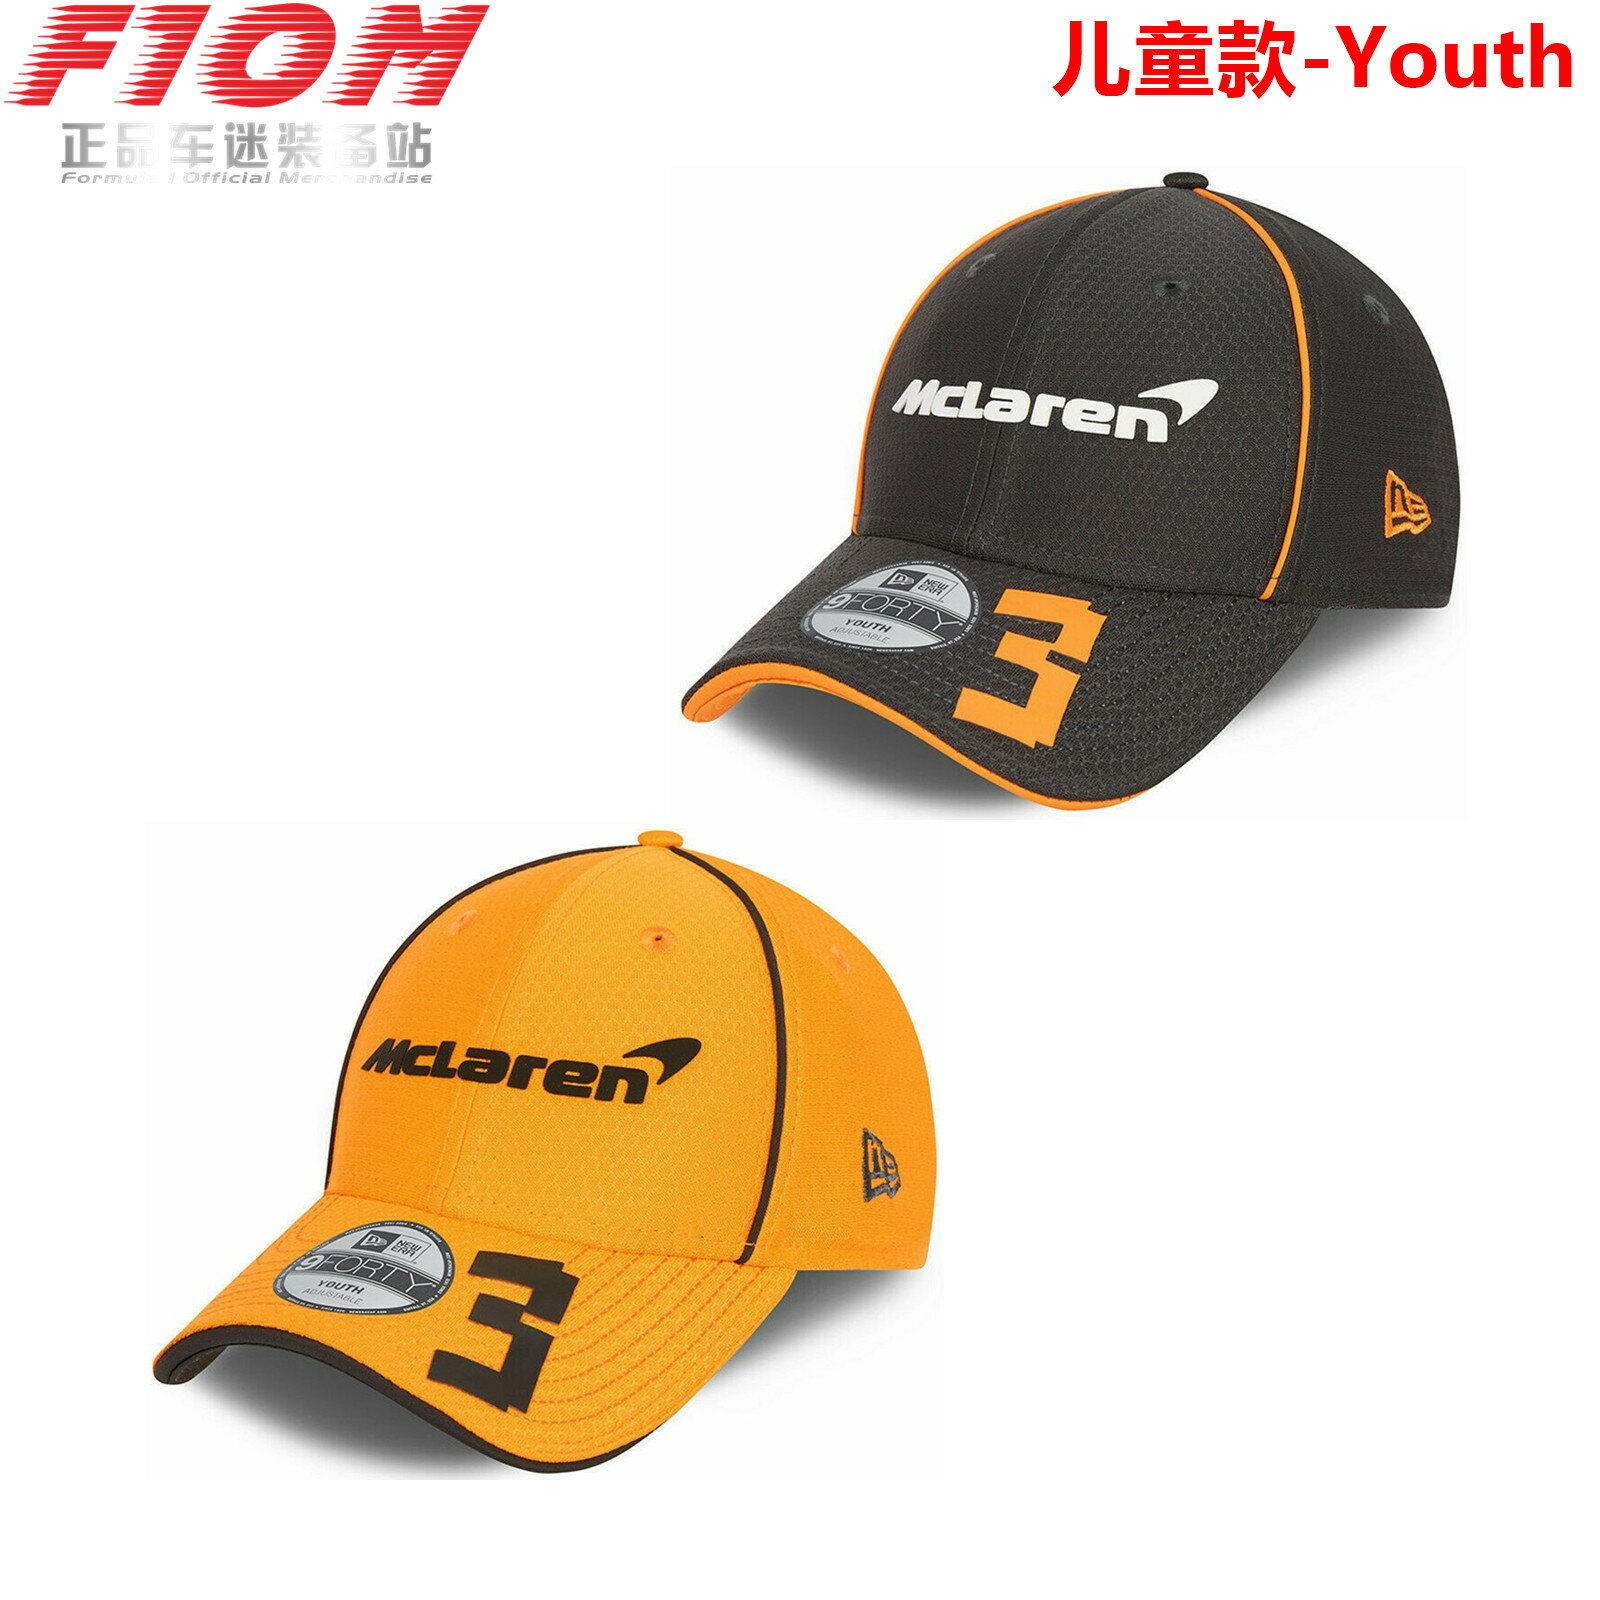 兒童帽 F1 邁凱倫車隊 McLaren 里卡多 2021 車手帽子 賽車棒球帽